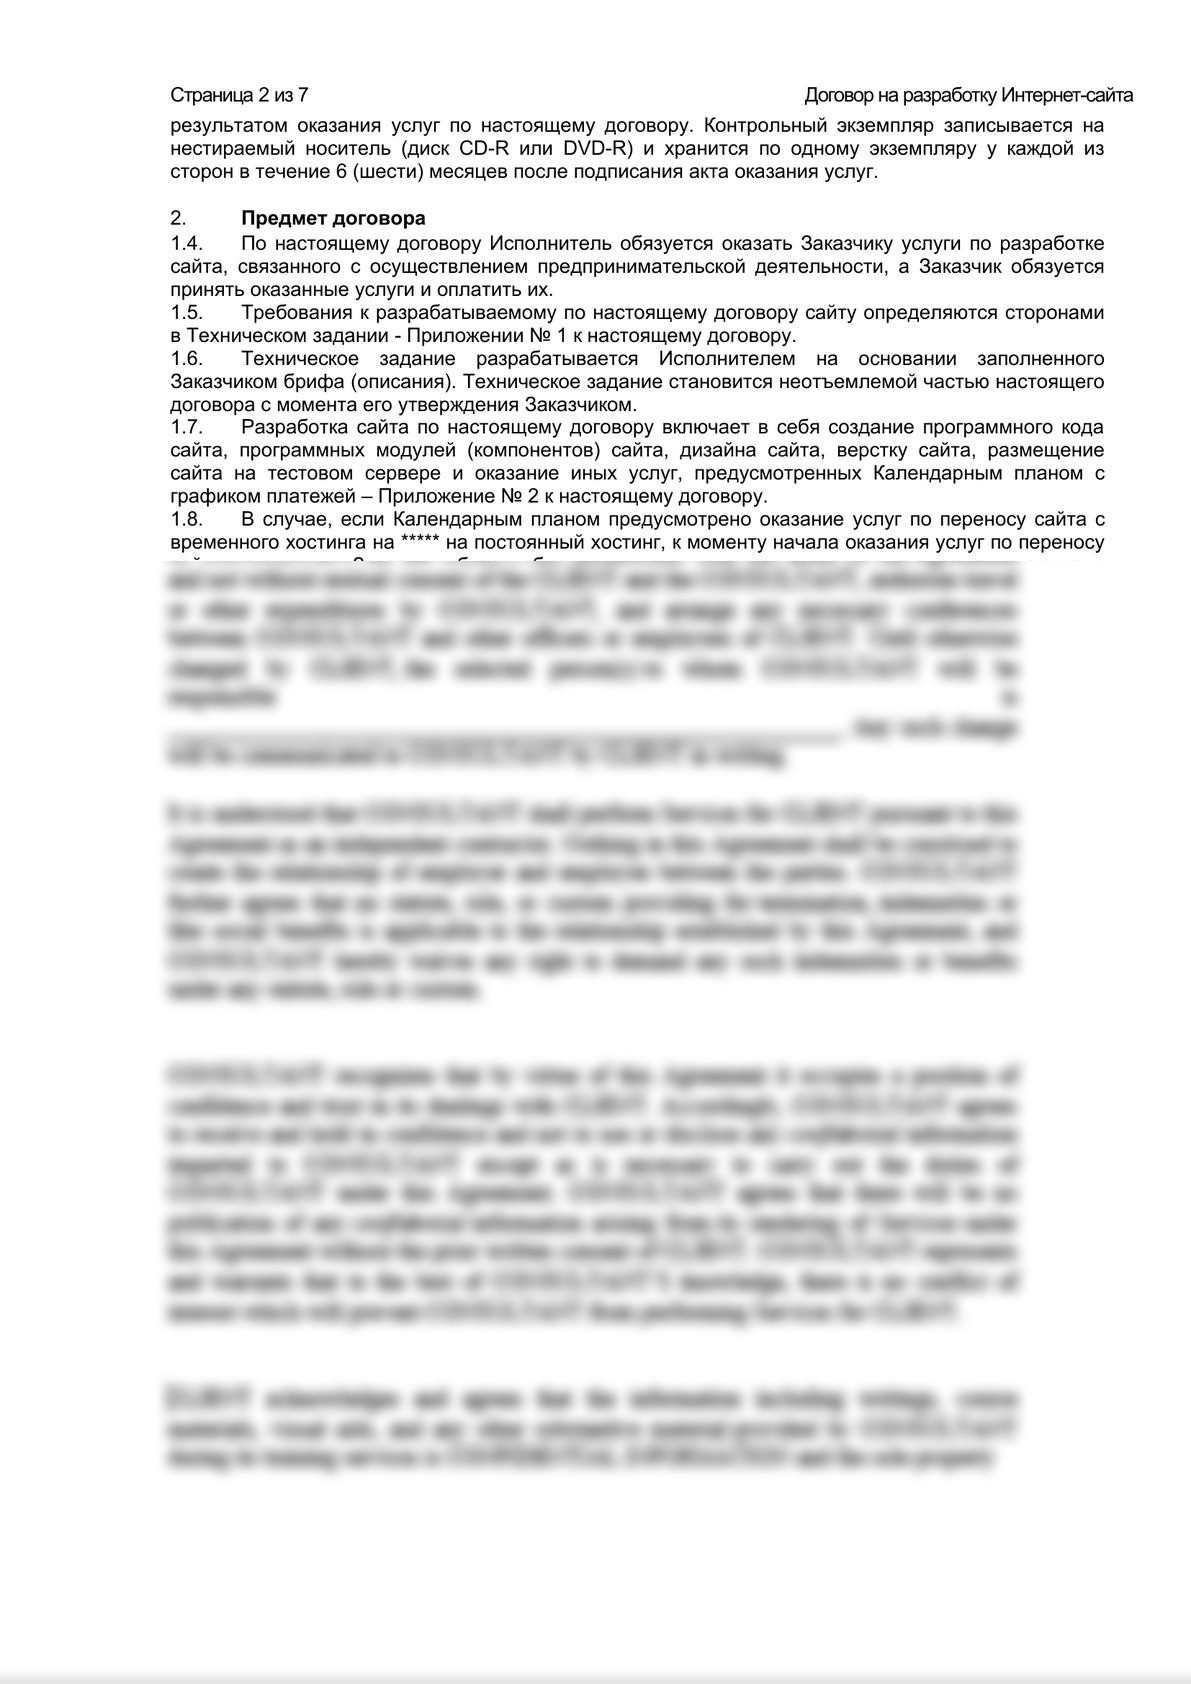 Шаблон договора на разработку Интернет-сайта-1